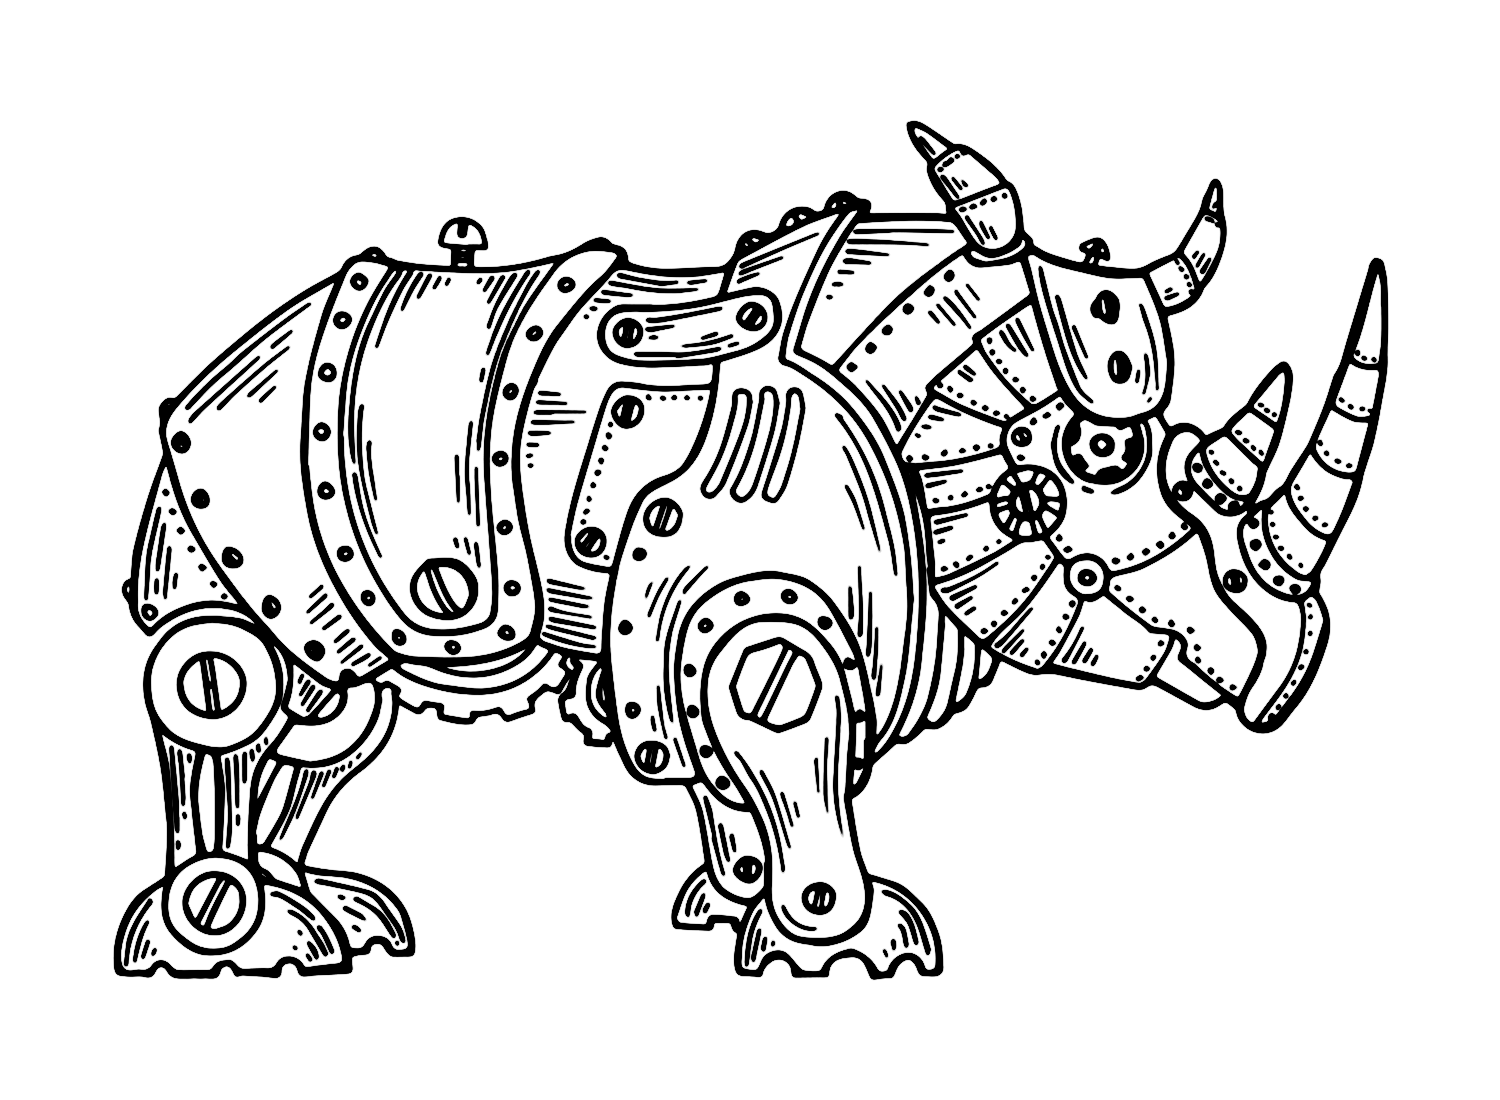 وحيد القرن الميكانيكي من وحيد القرن